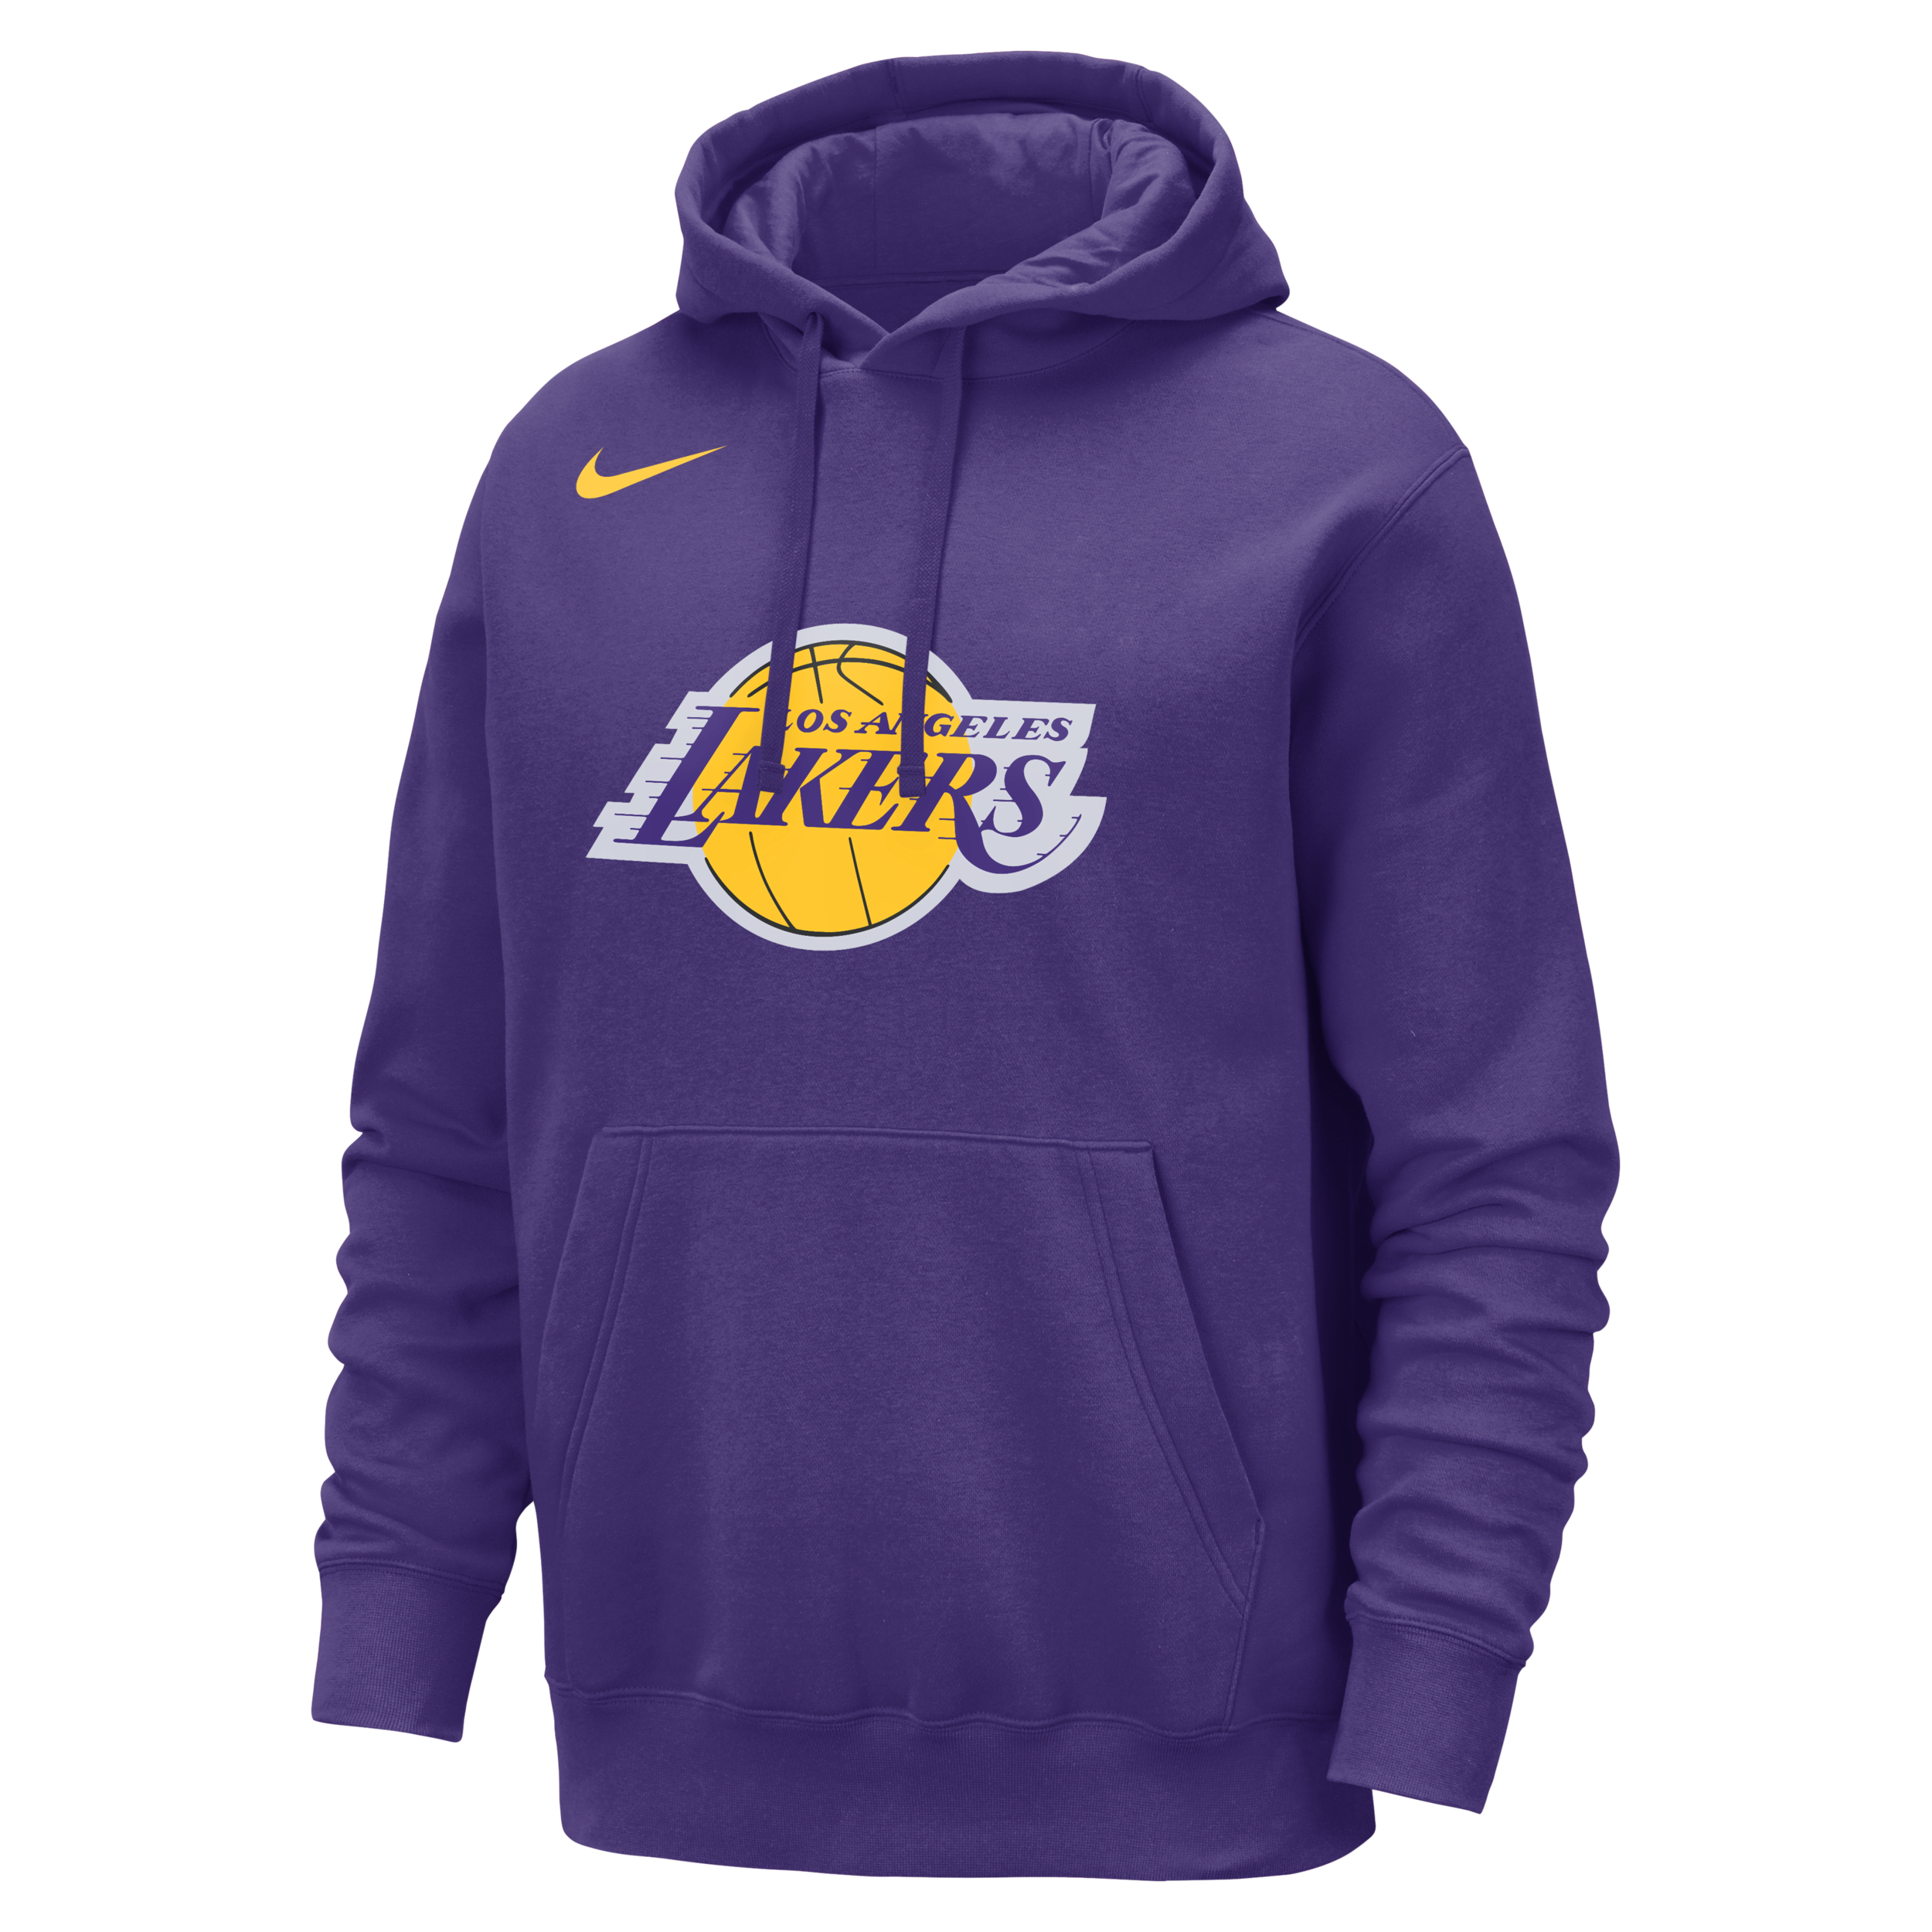 Los Angeles Lakers Club Sudadera con capucha Nike de la NBA - Hombre - Morado